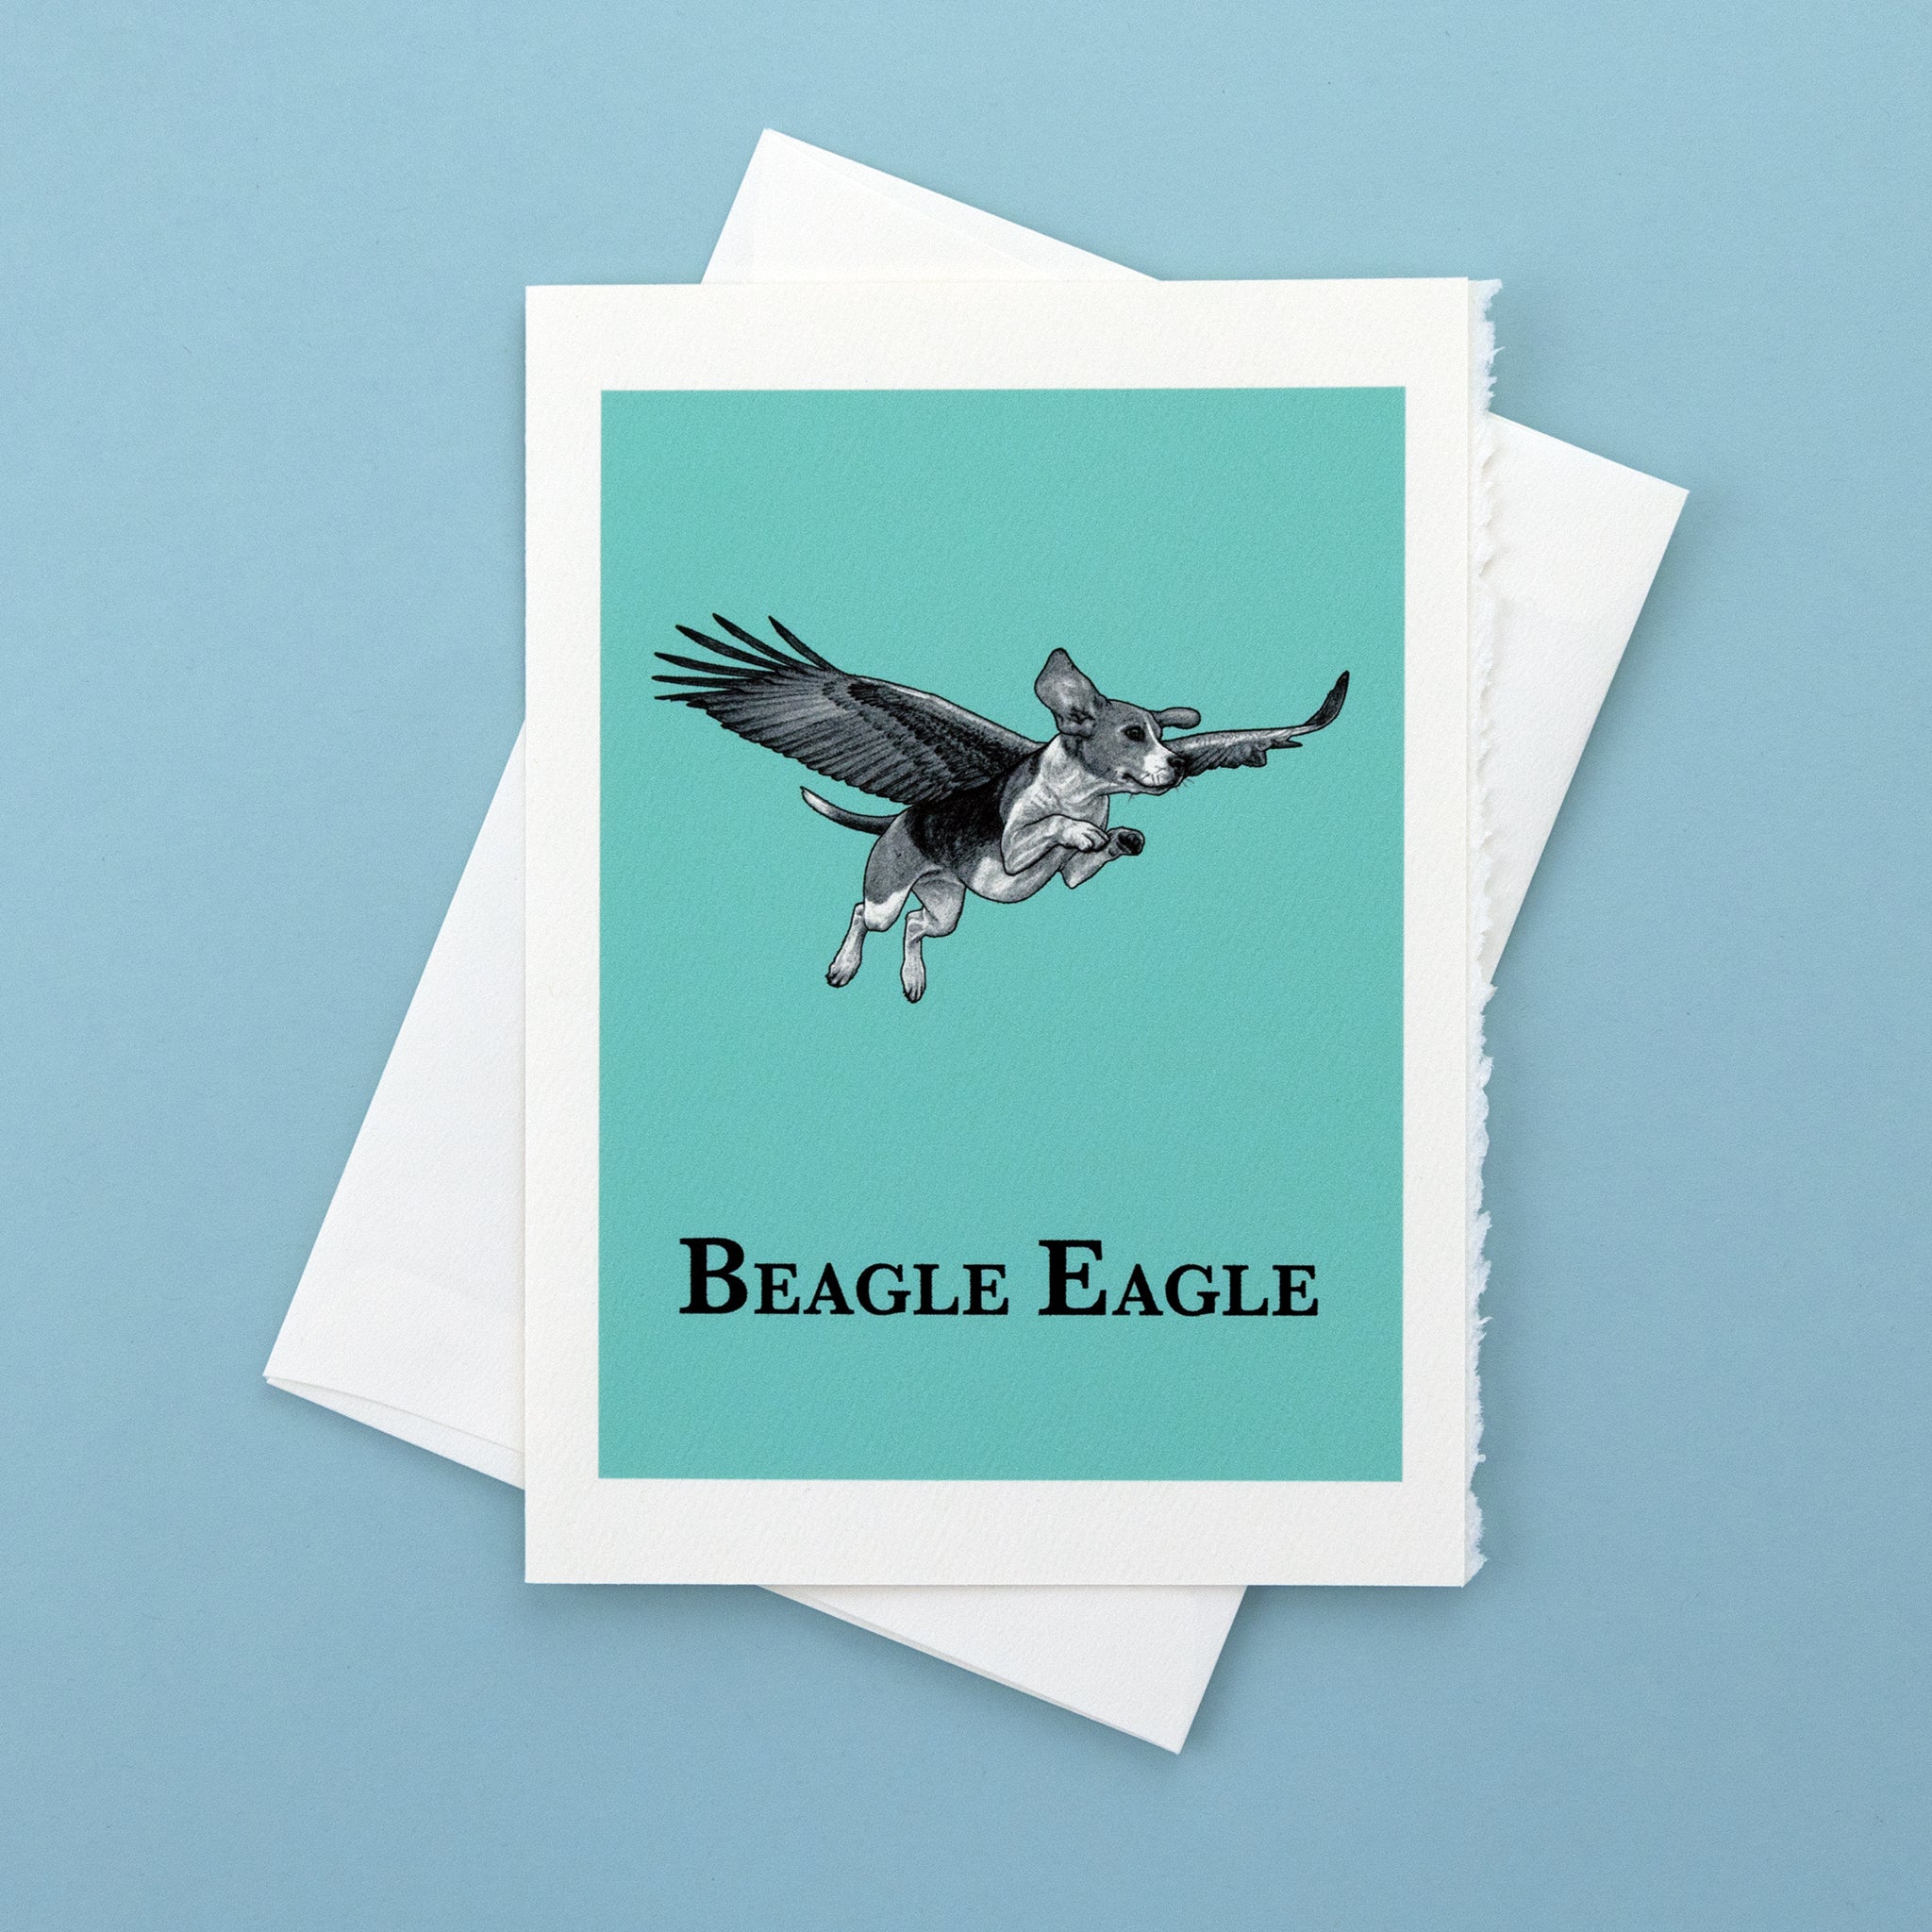 Beagle Eagle | Beagle + Eagle Hybrid Animal | 5x7" Greeting Card